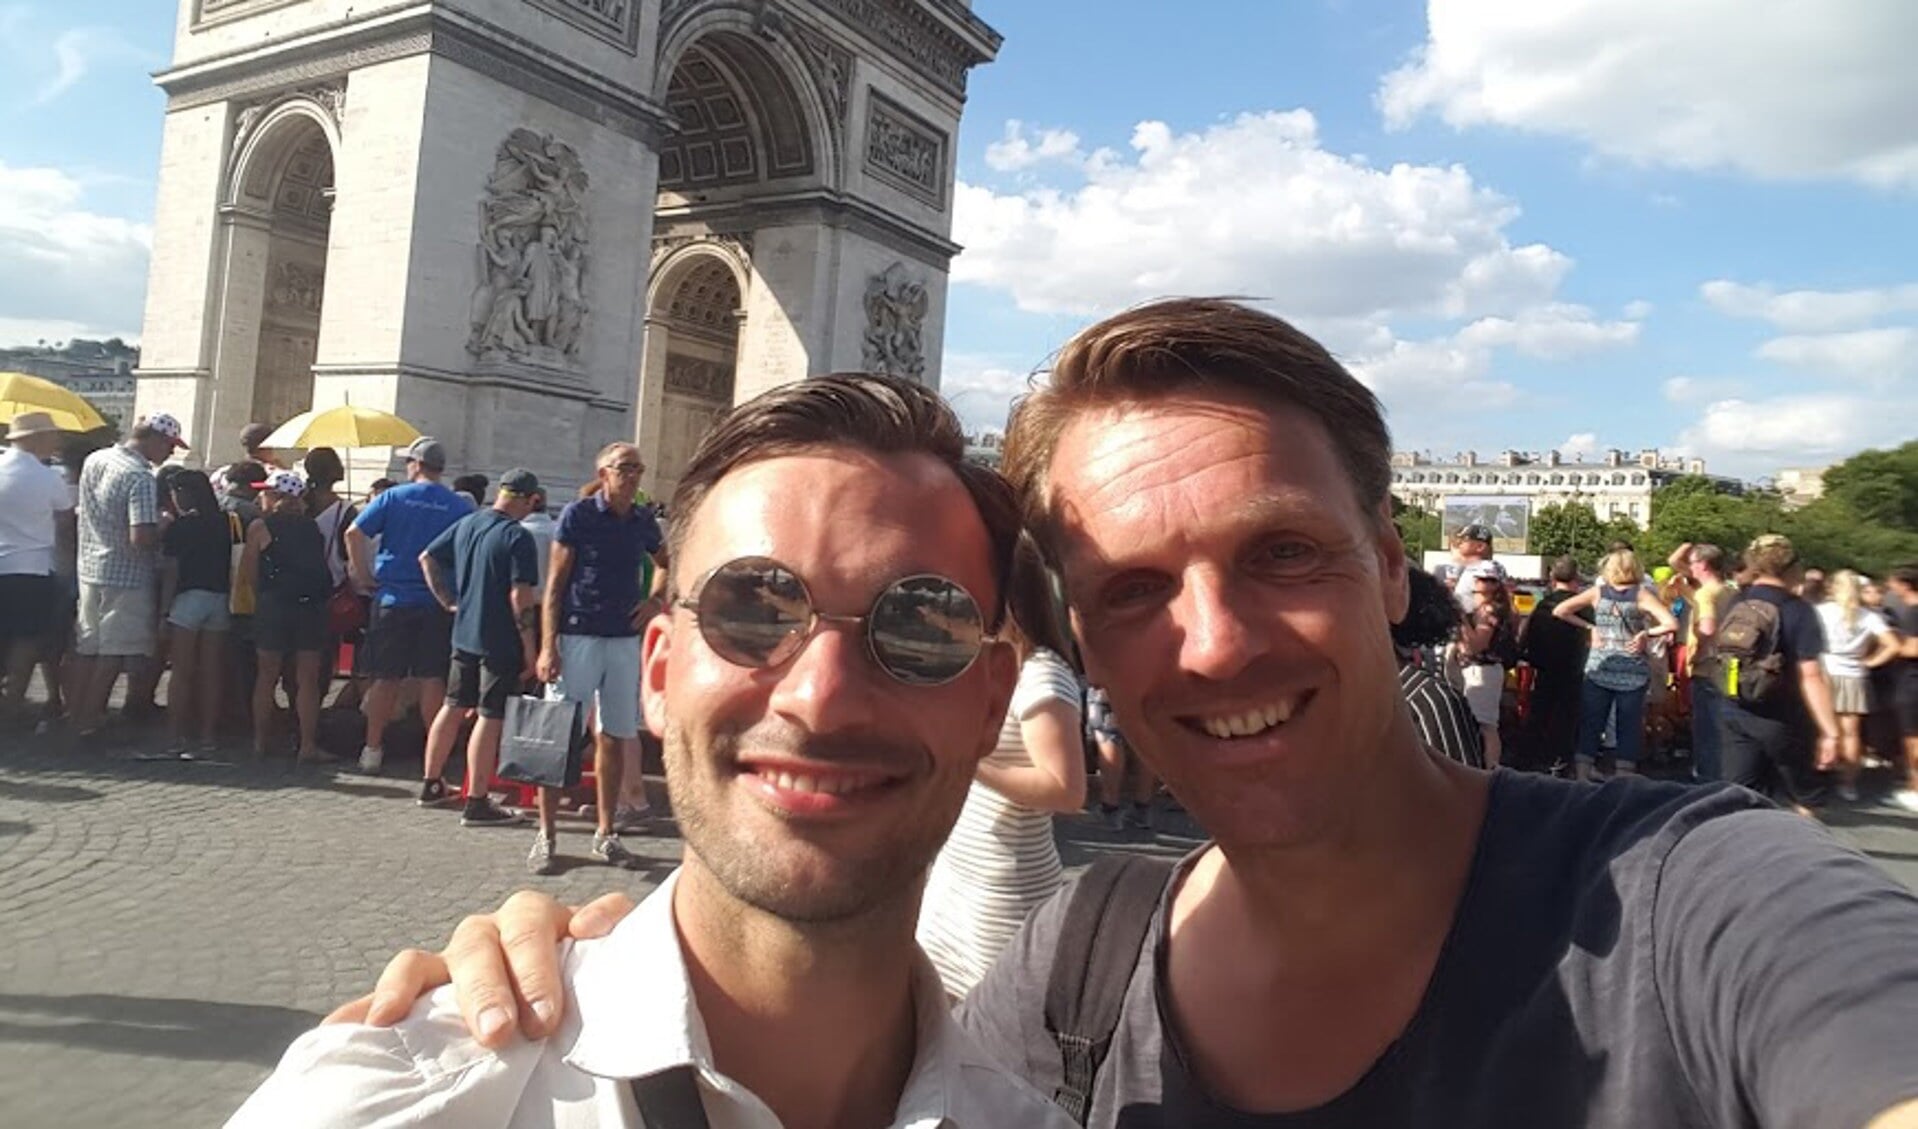 Adje v Etten (L) en Frank vd Nieuwenhuijzen (R) maken een selfie tijdens het optreden in Parijs.